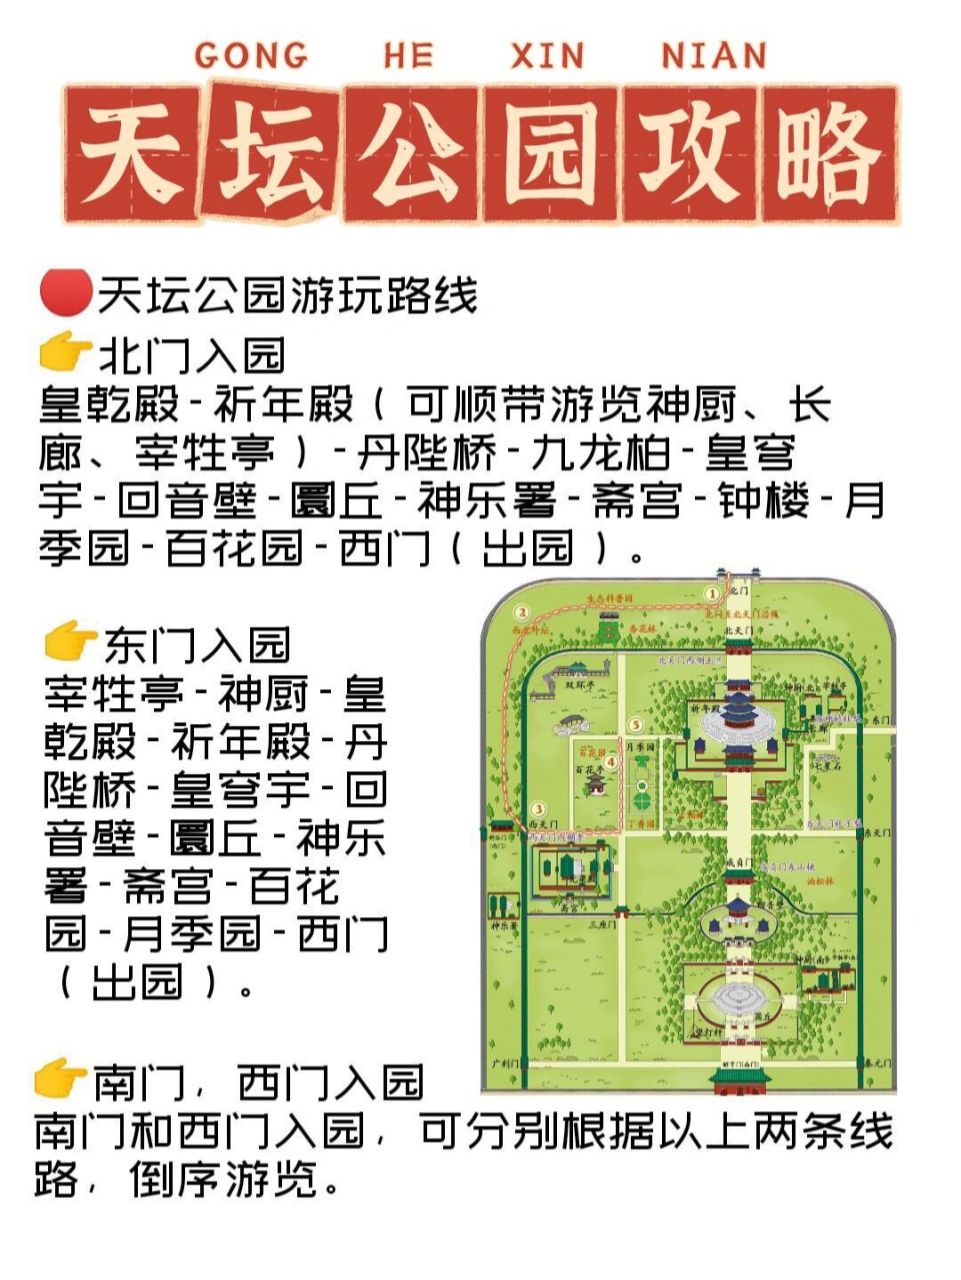 北京天宫院地图图片